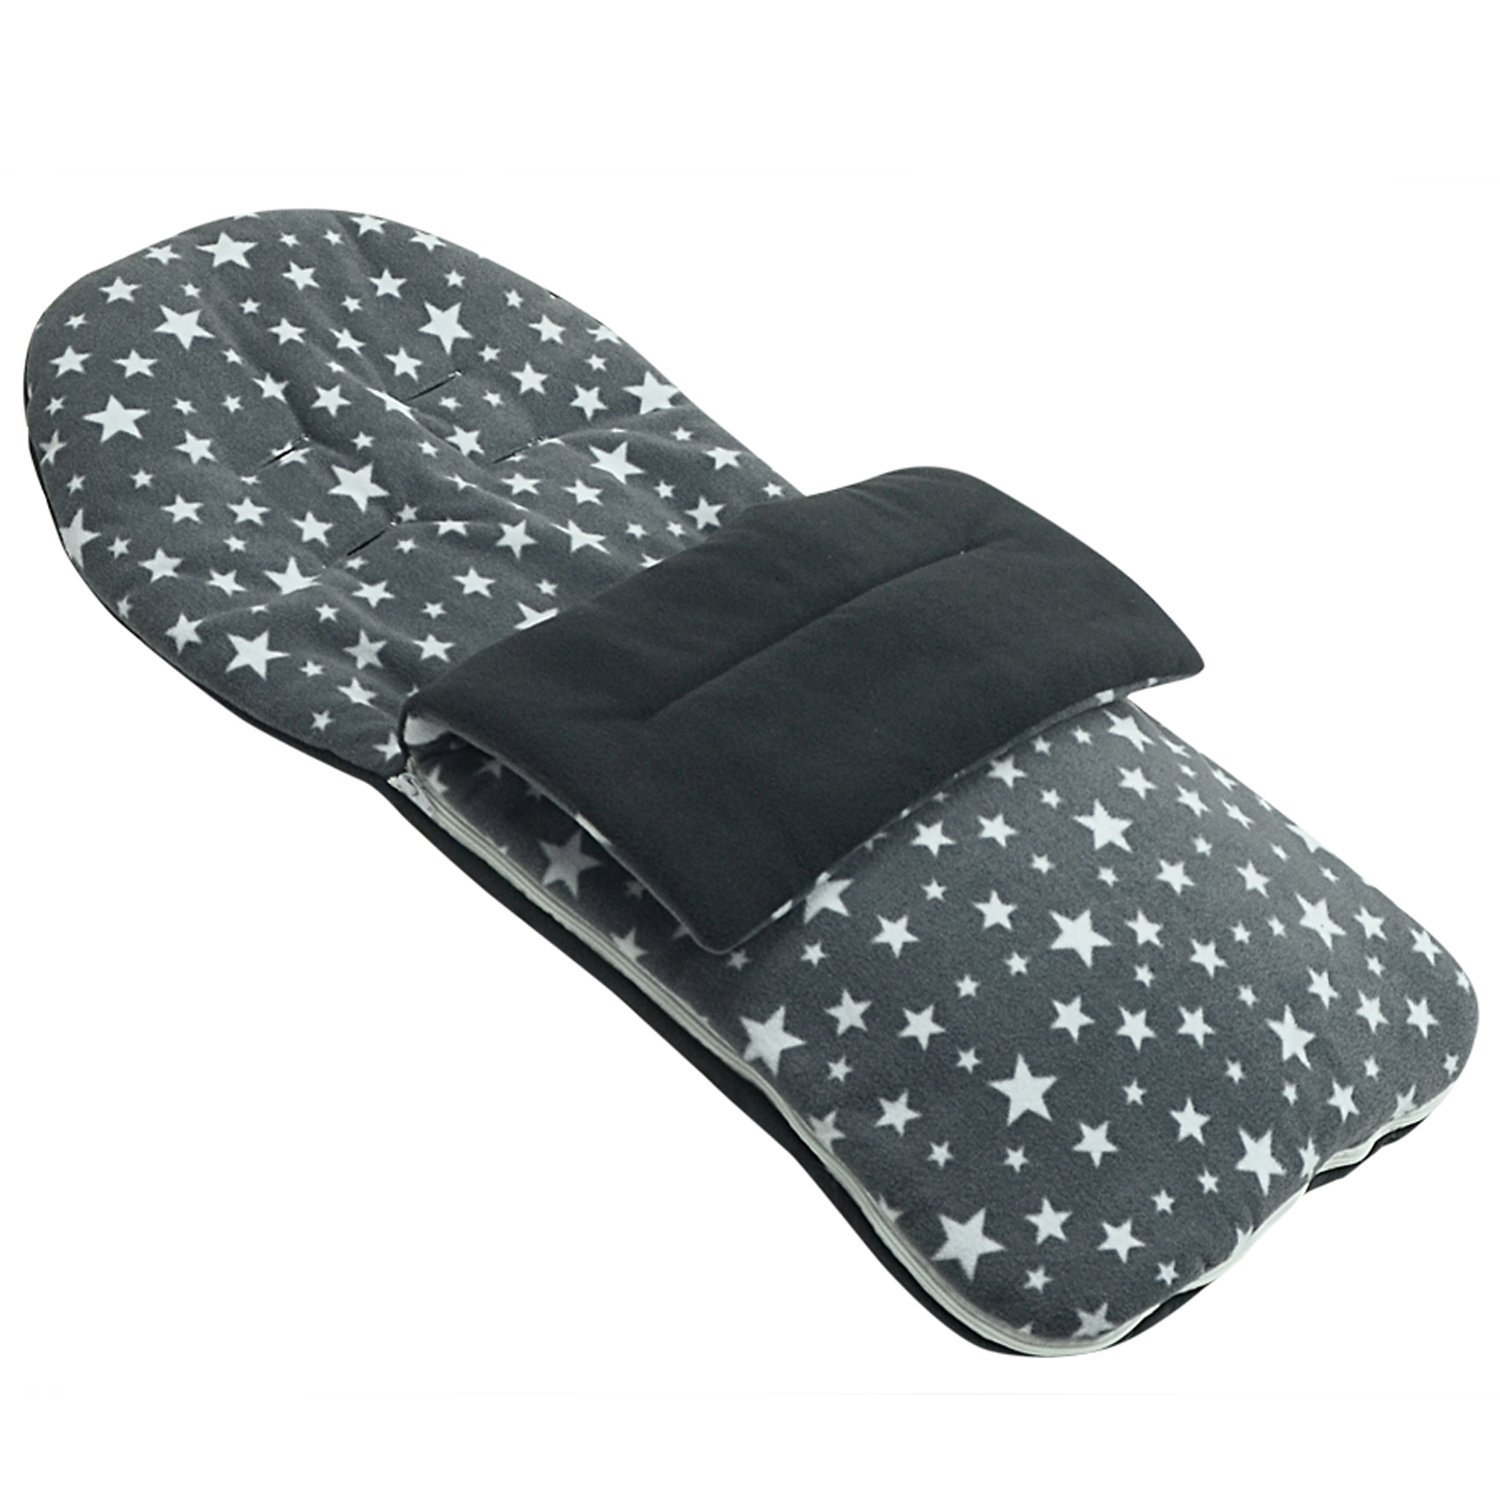 Fleece Fußsack kompatibel mit Maclaren Volo – Grau Star